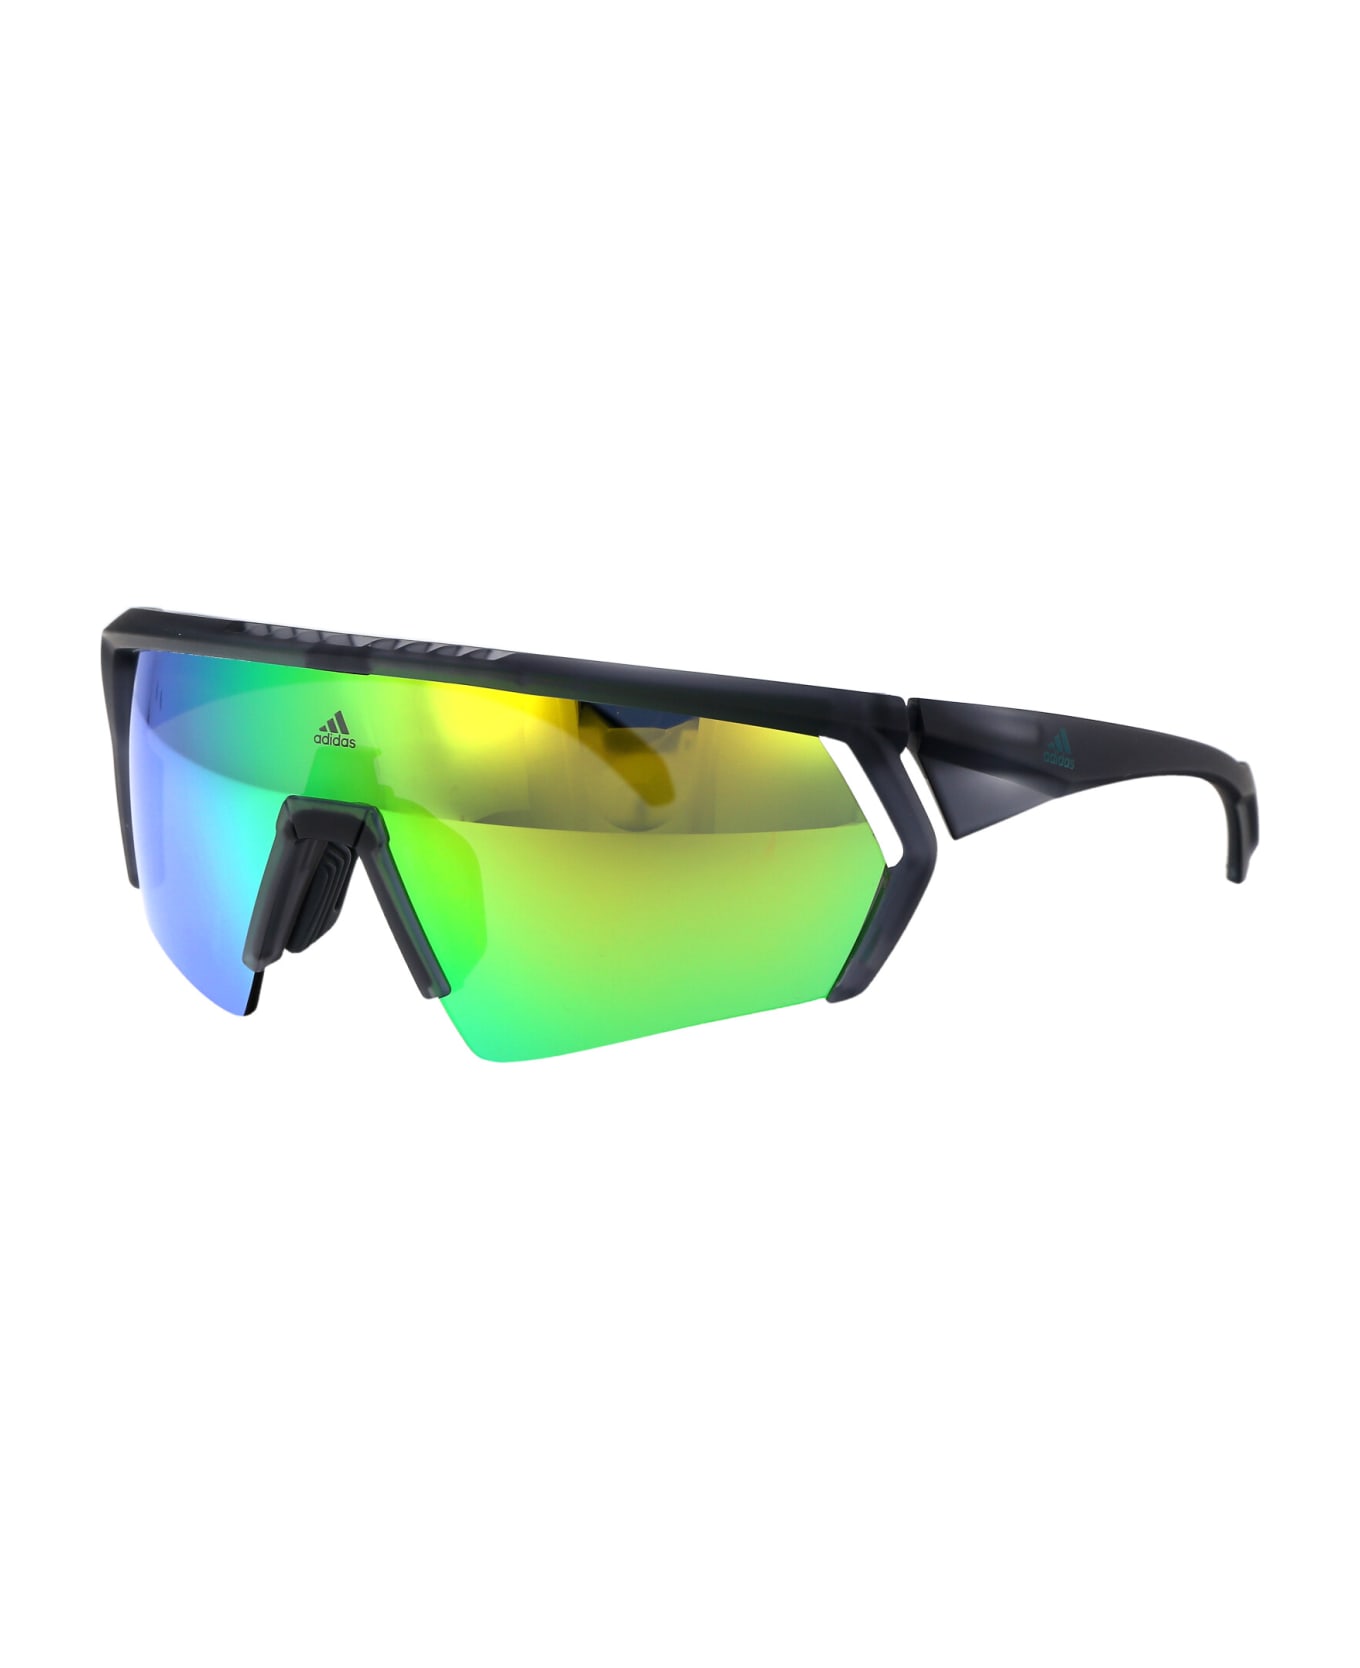 Adidas Cmpt Aero Sunglasses - 20Q Grigio/Altro/Verde Specchiato